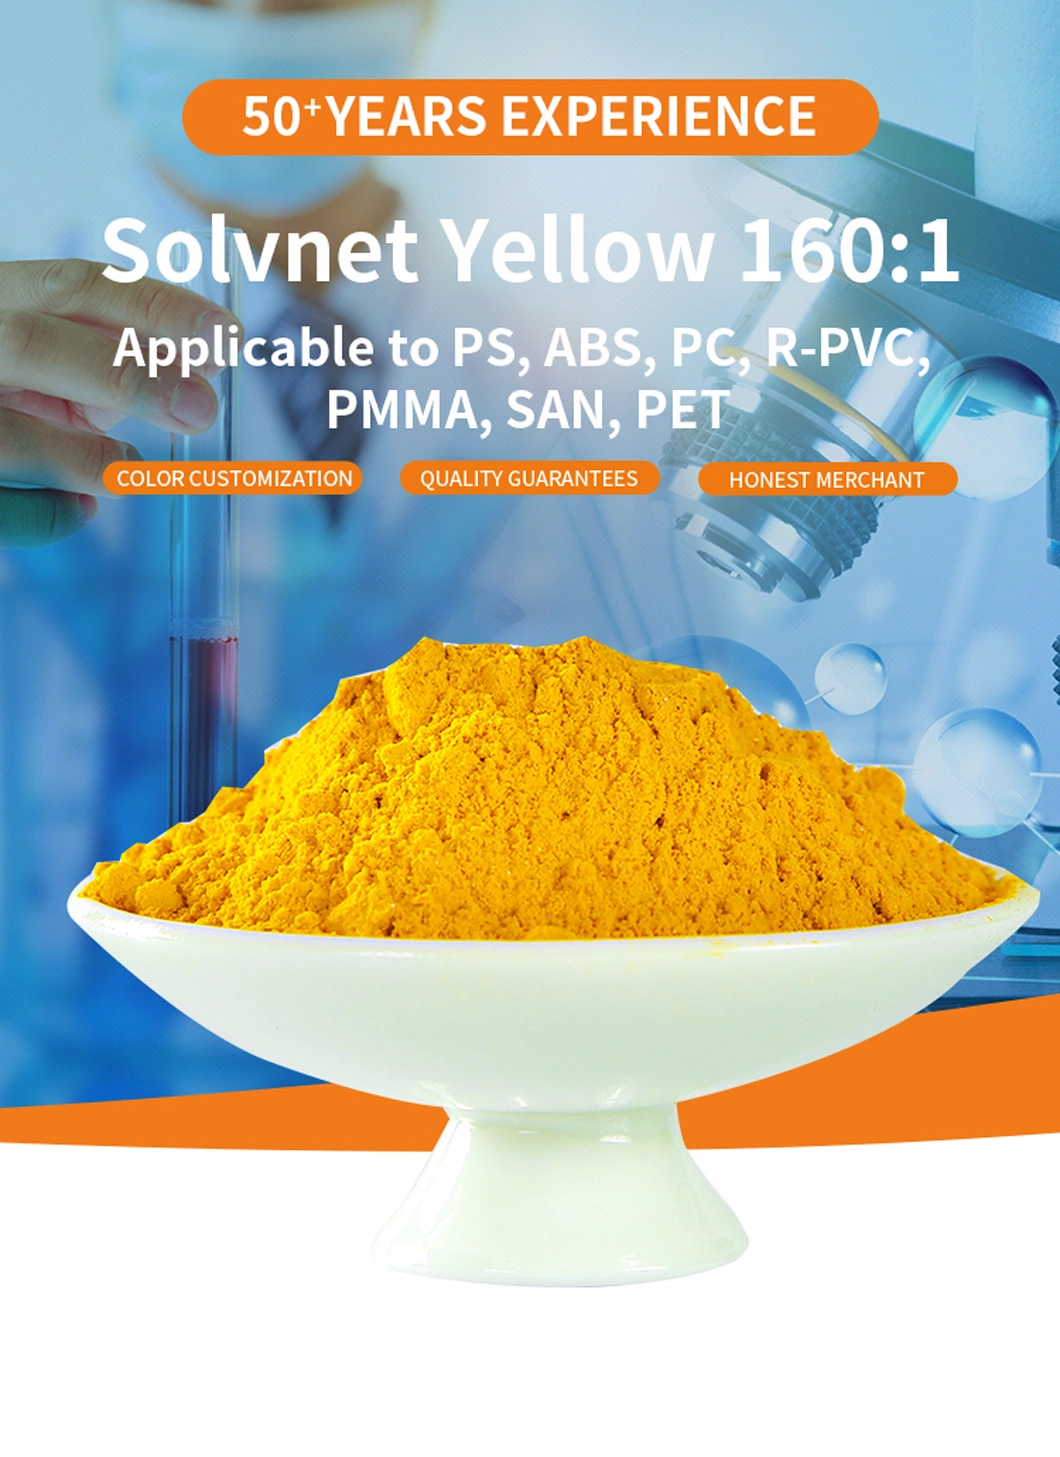 Solvnet Yellow 160: 1 PS, ABS, PC, R-PVC, PMMA, San, Pet